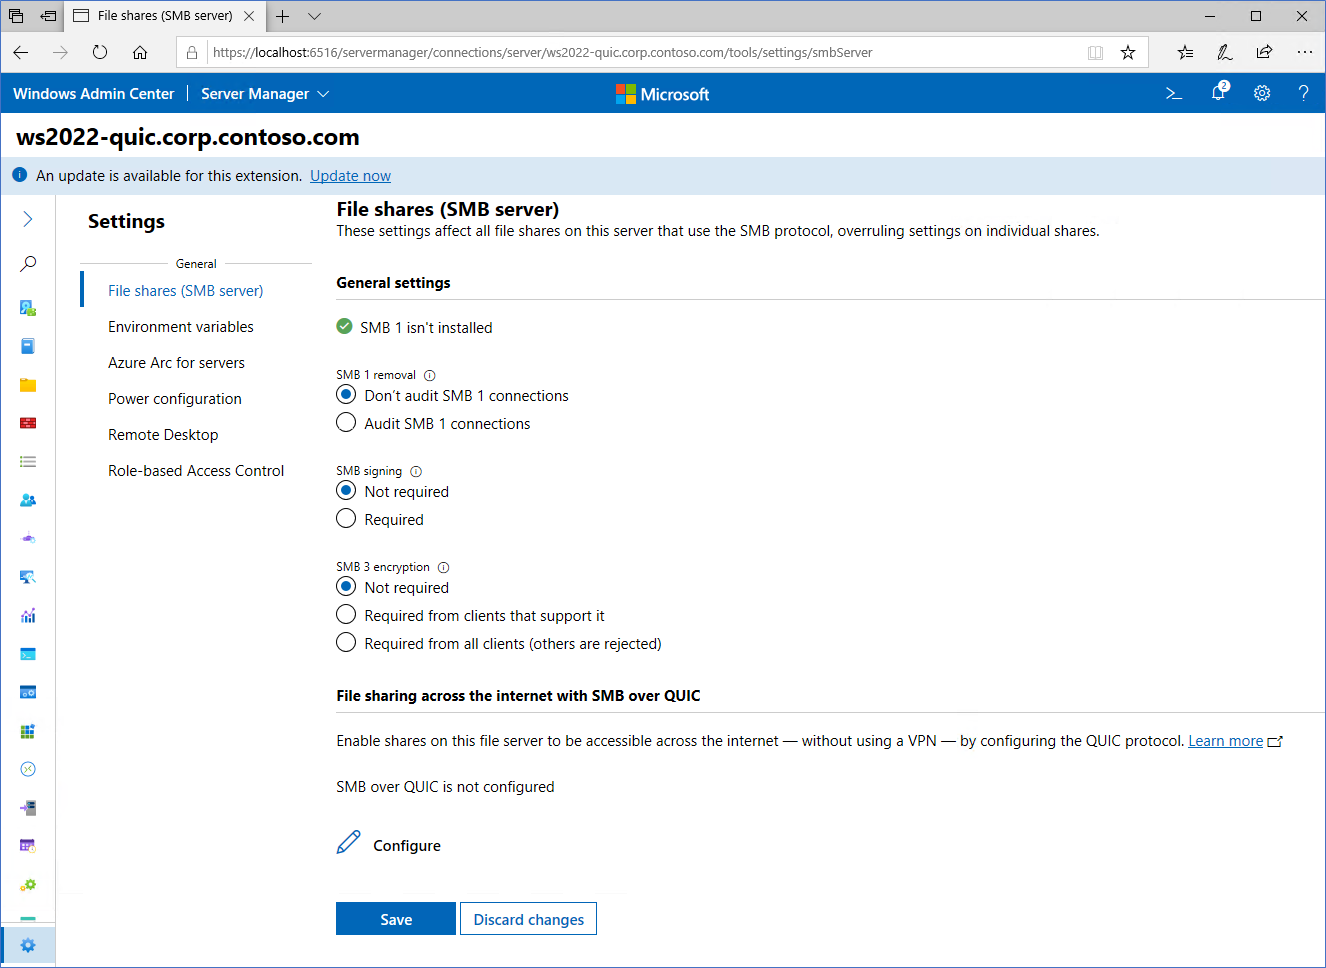 Uma imagem mostrando a tela de configuração do SMB sobre QUIC no Windows Admin Center